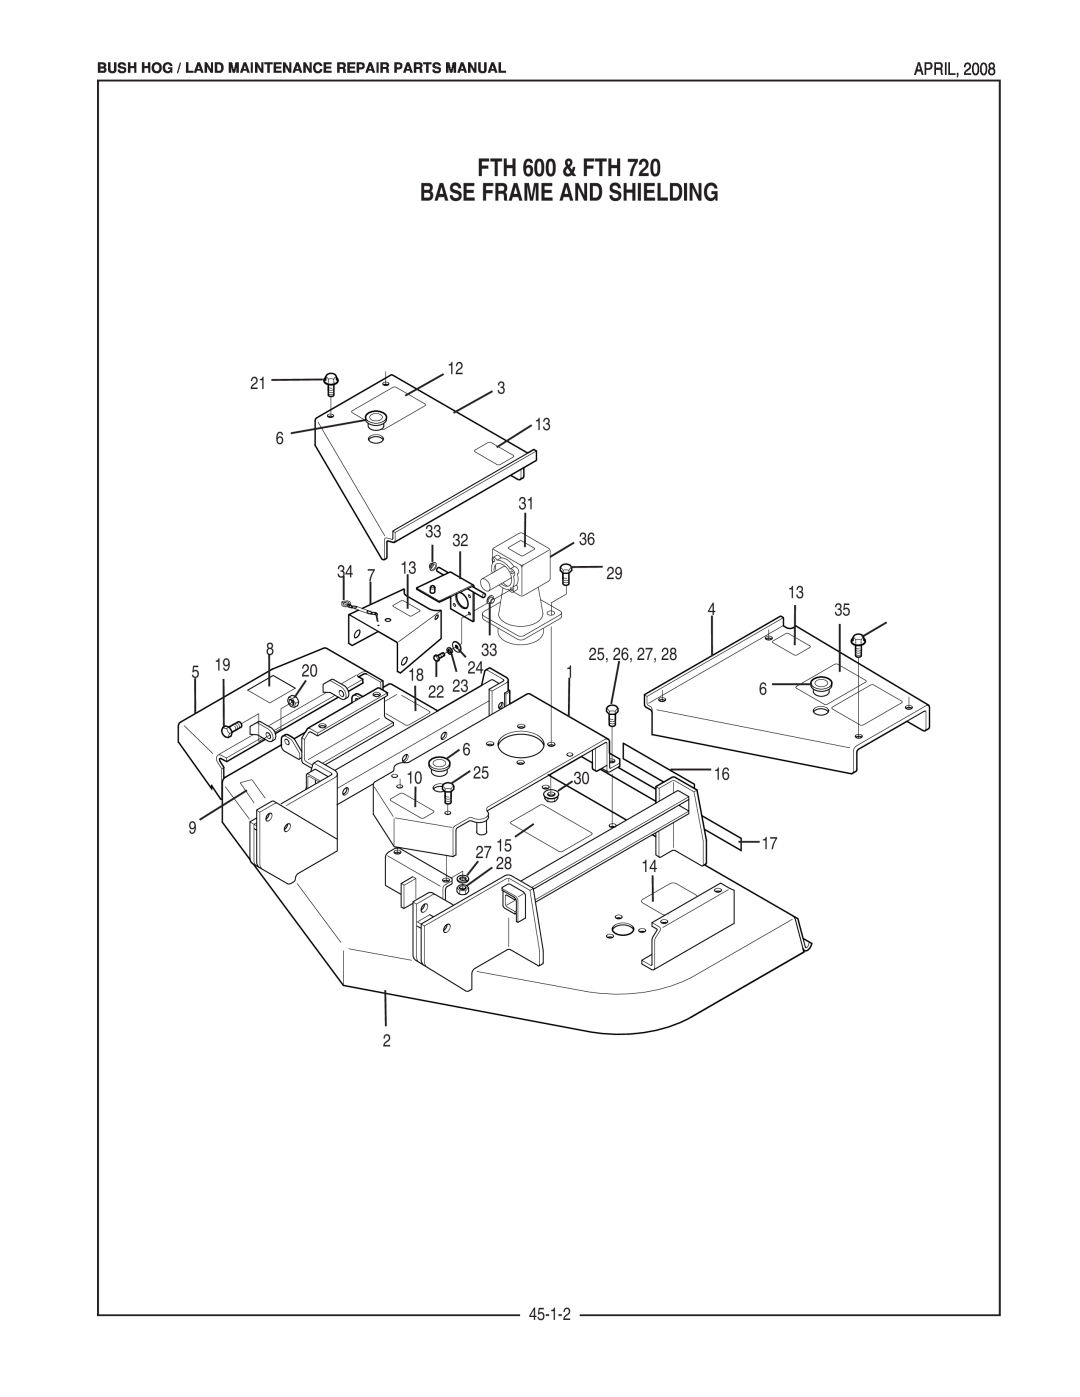 Bush Hog FTH 480 manual FTH 600 & FTH, Base Frame And Shielding, April, 18 22, 45-1-2, 25, 26, 27 